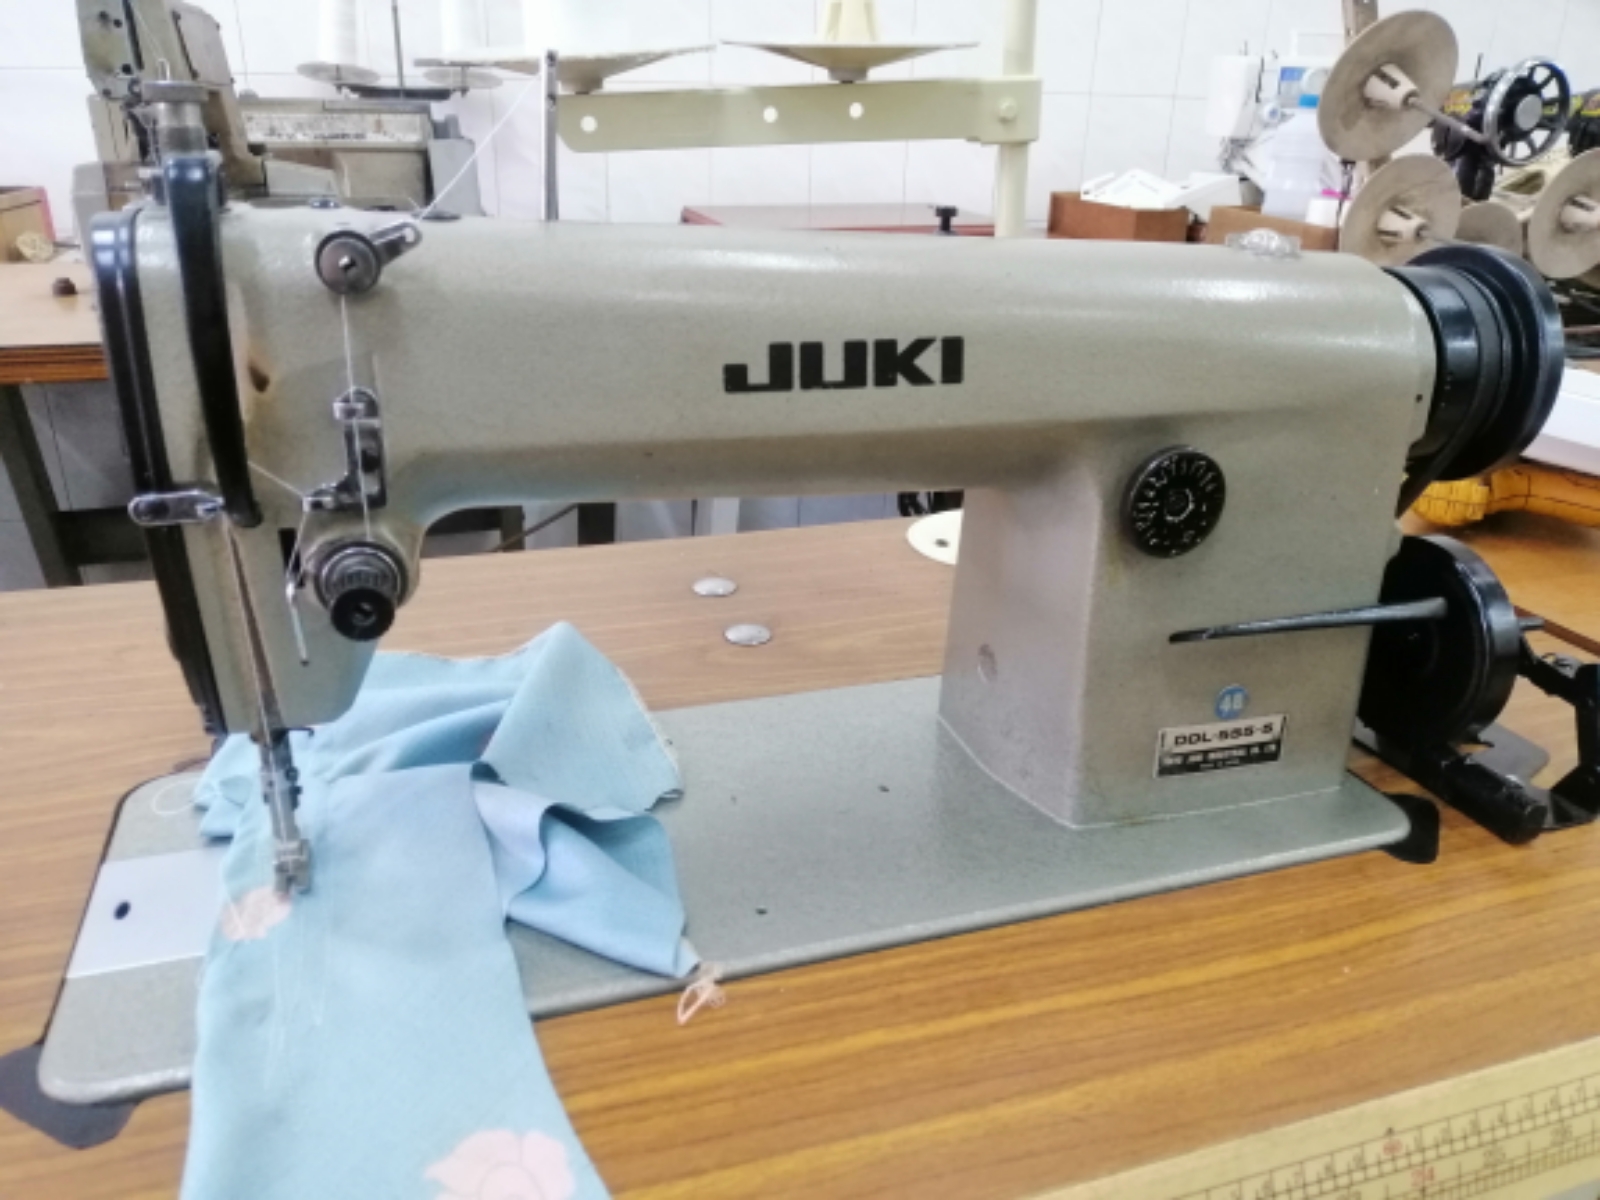 JUKI HI SPEED SEWING MACHINE 